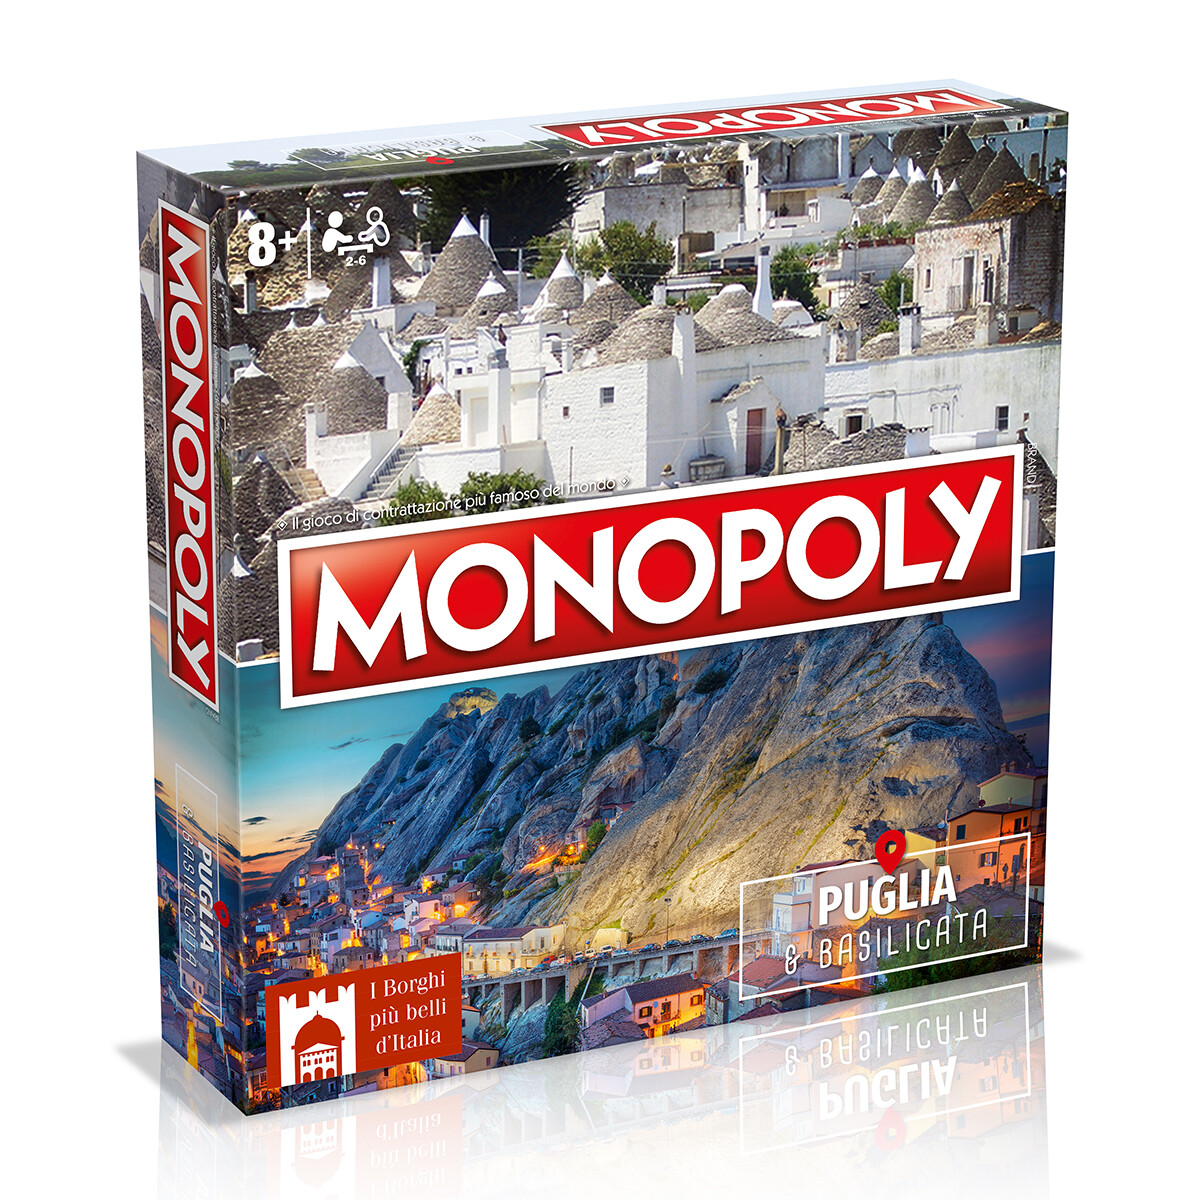 Monopoly - i borghi più belli d'italia - edizione puglia & basilicata - MONOPOLY